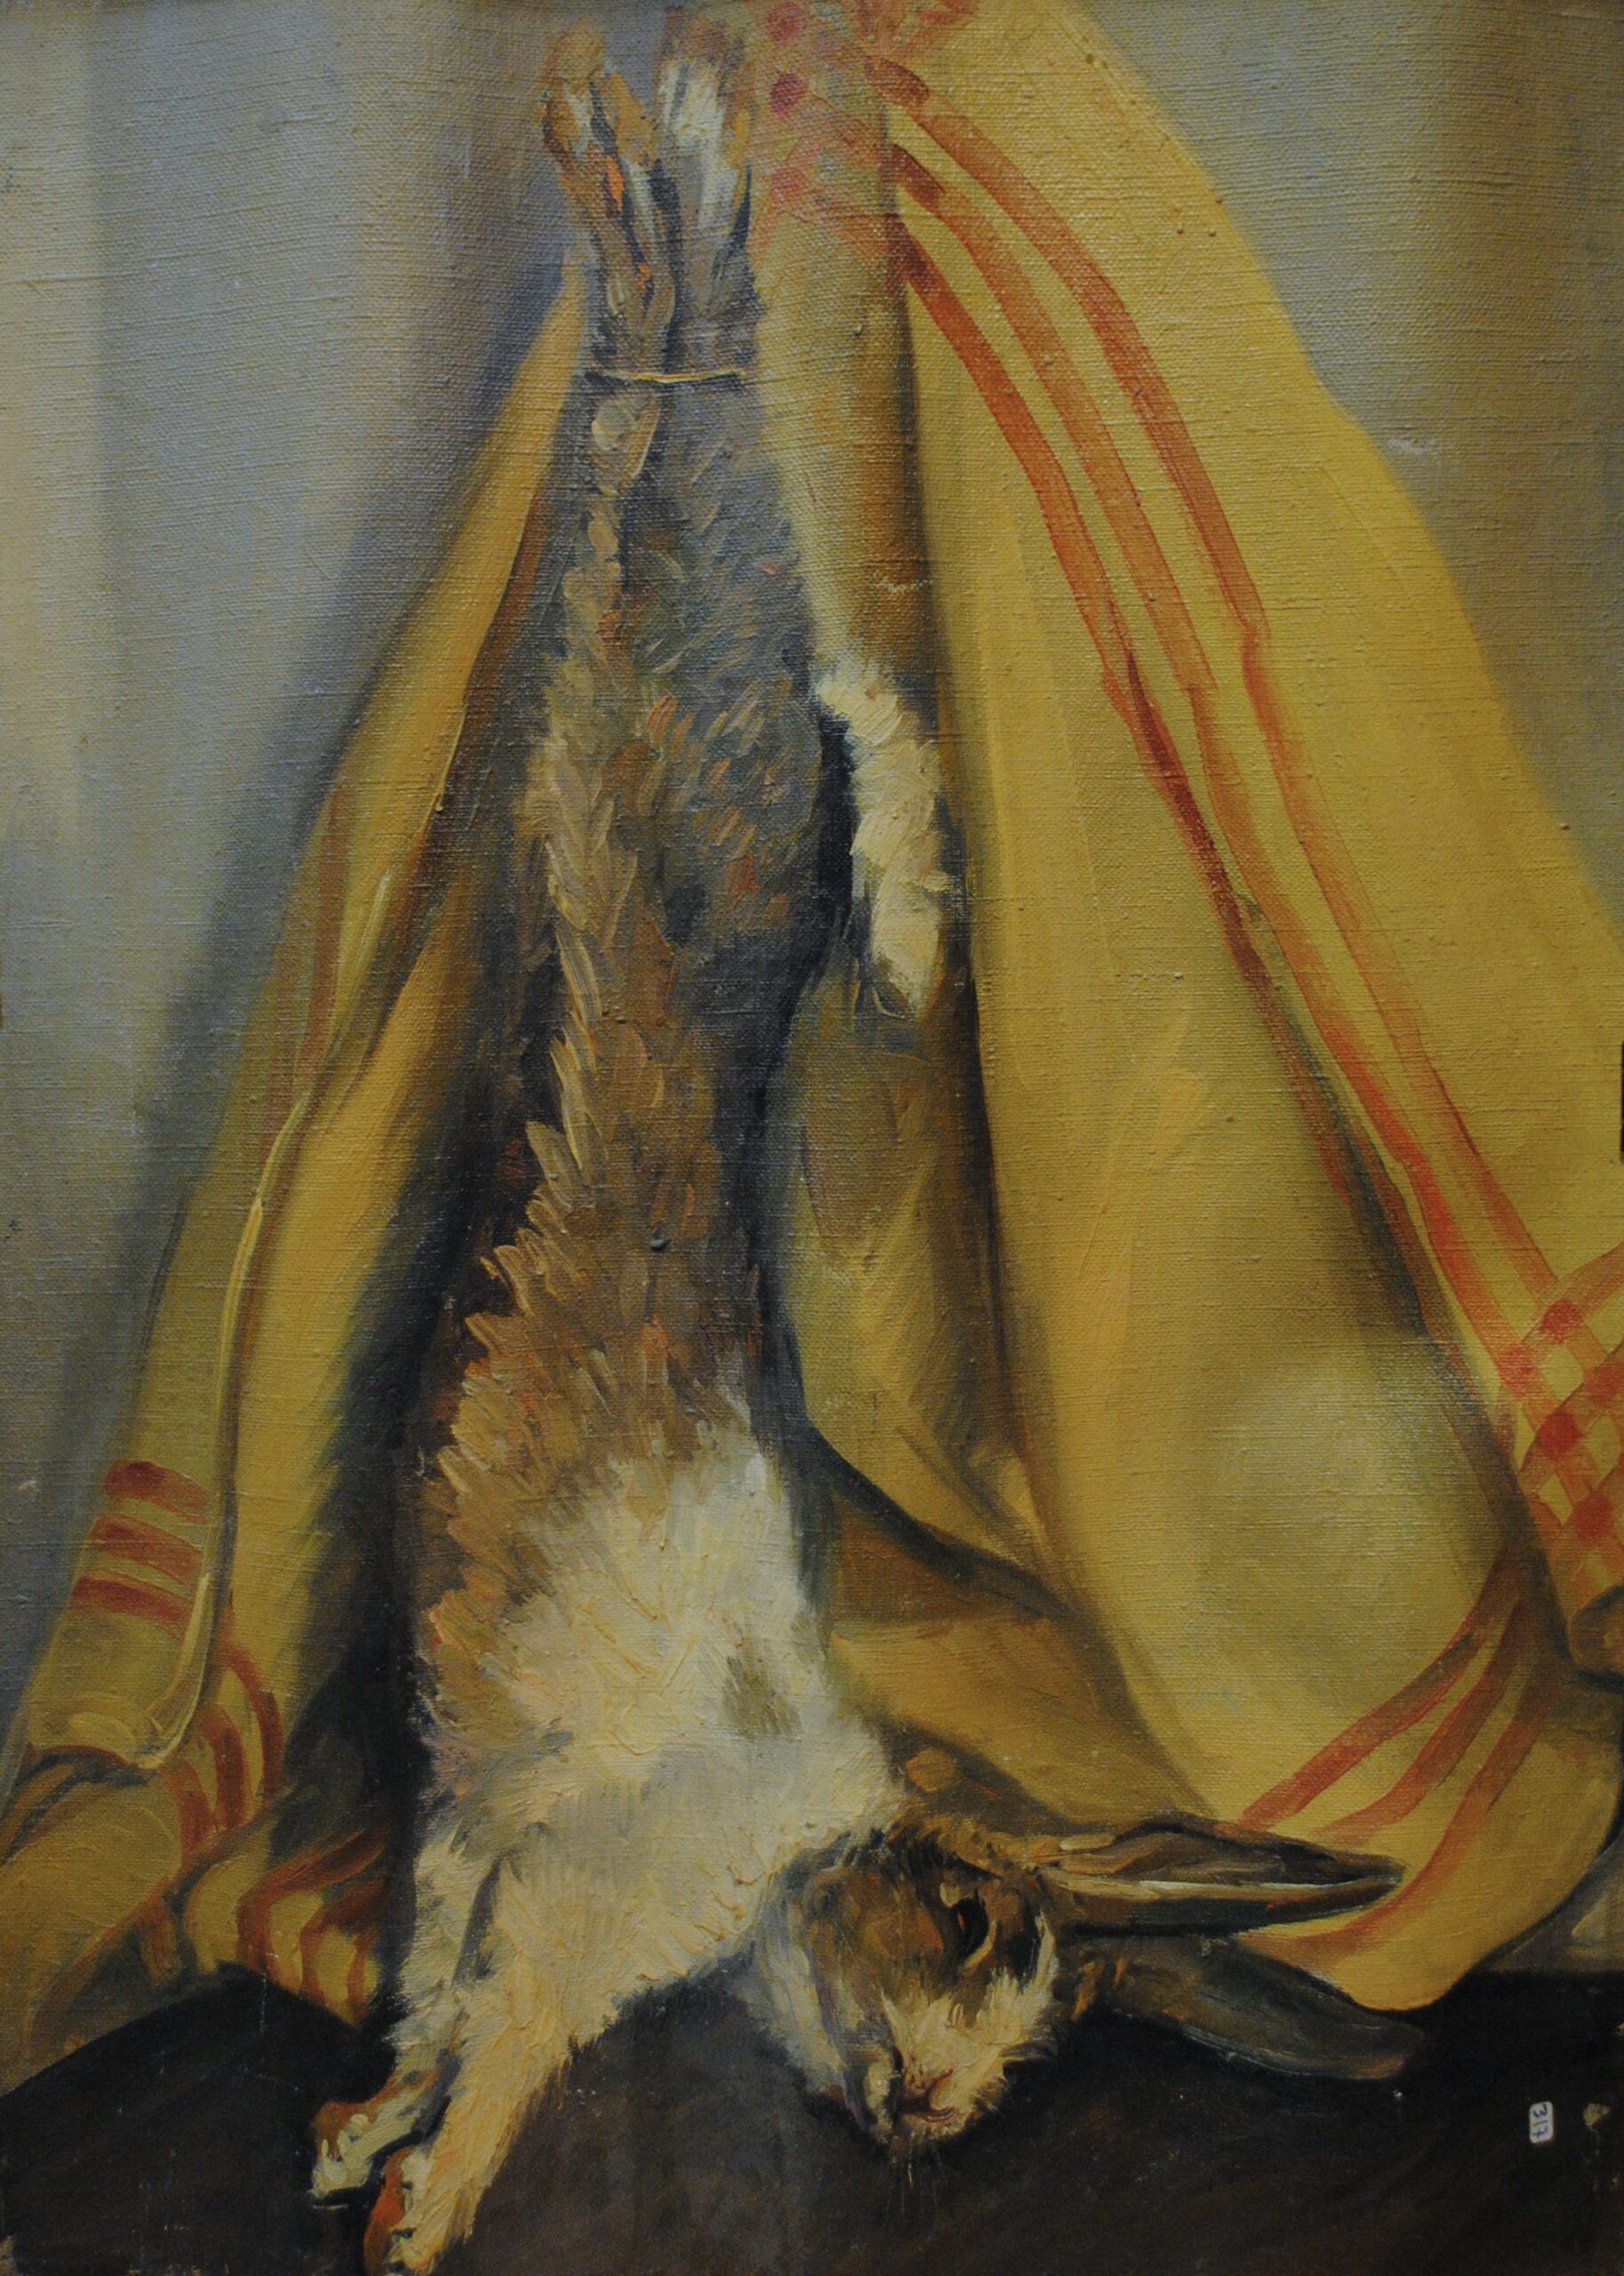 Pintura de José Manaut titulada Conejo colgado. Óleo sobre lienzo.